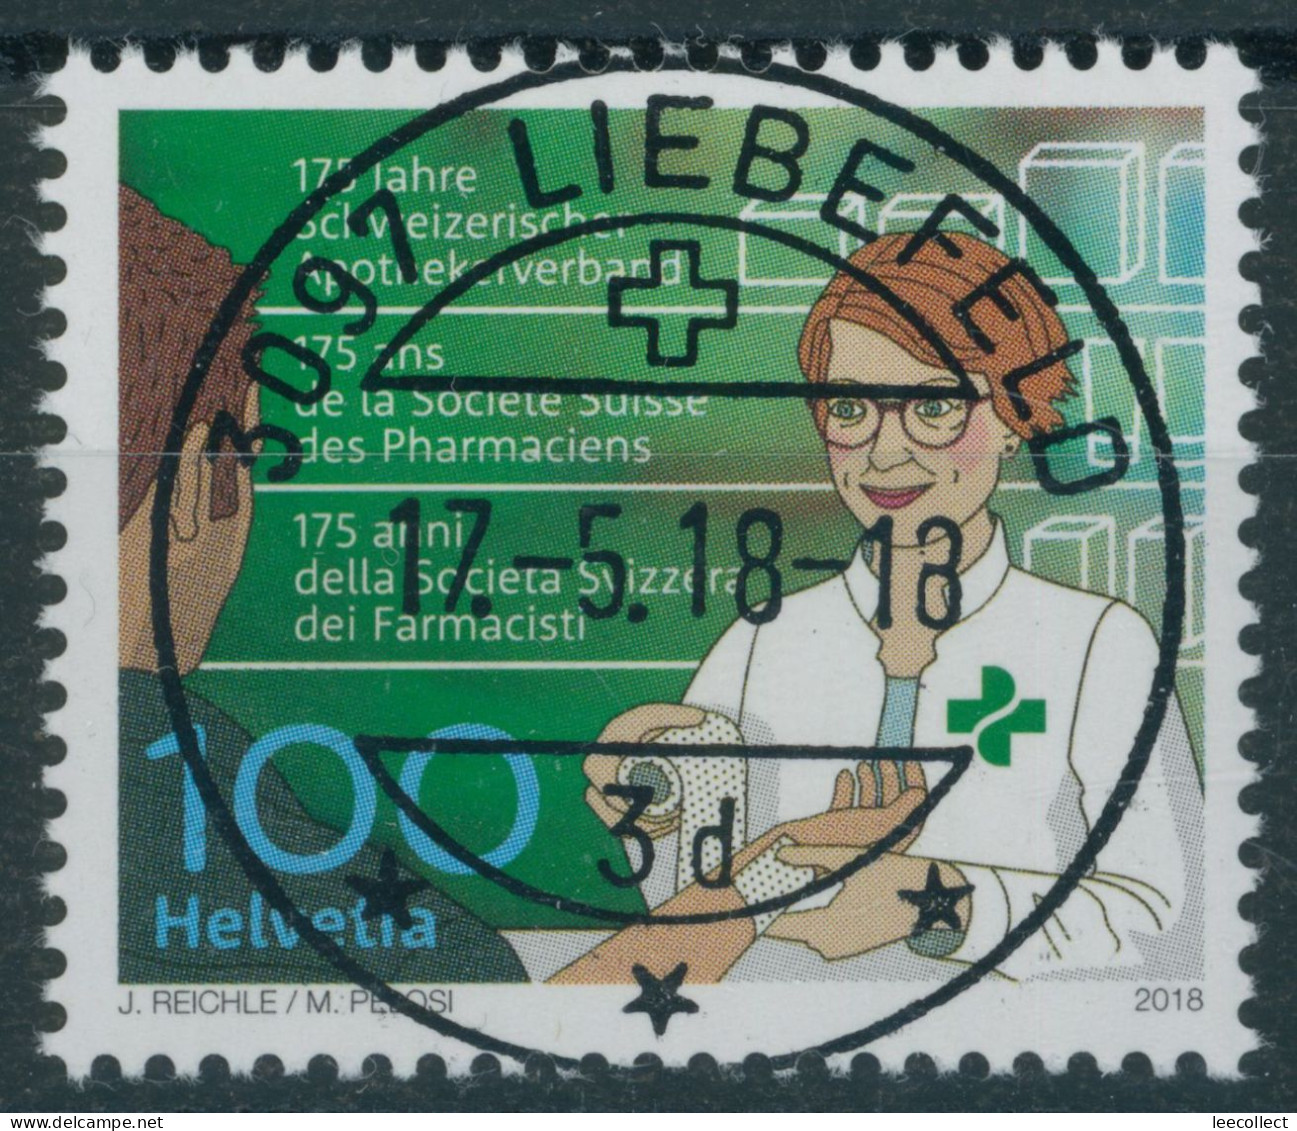 Suisse - 2018 - Apothekerverband - Ersttag Voll Stempel ET - Used Stamps